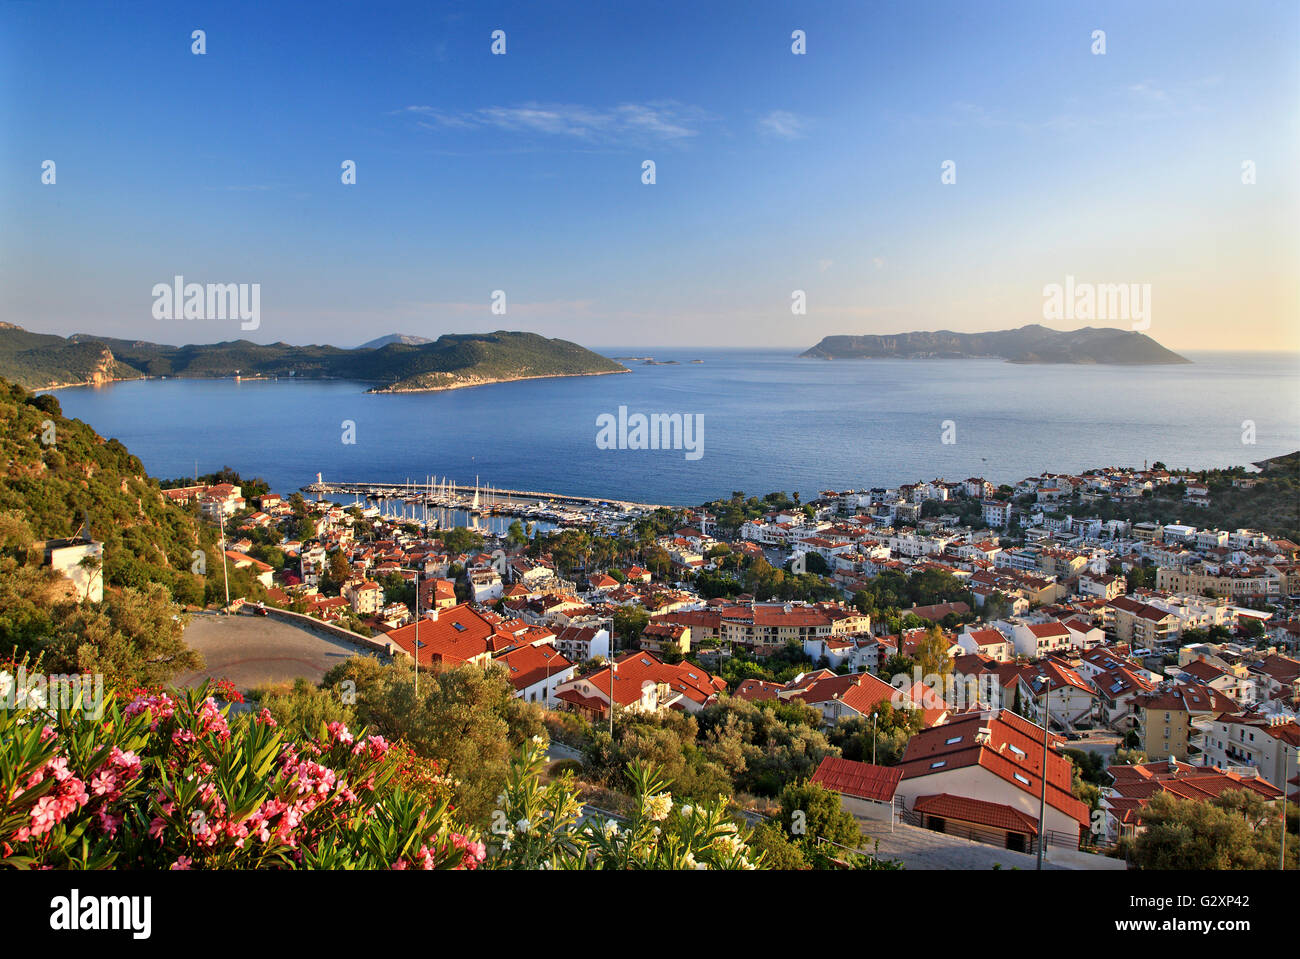 La pittoresque ville de Kas (ancien nom "Antiphellos'), la Lycie, province d'Antalya en Turquie. Dans le BG Kastelorizo (grec) de l'île. Banque D'Images